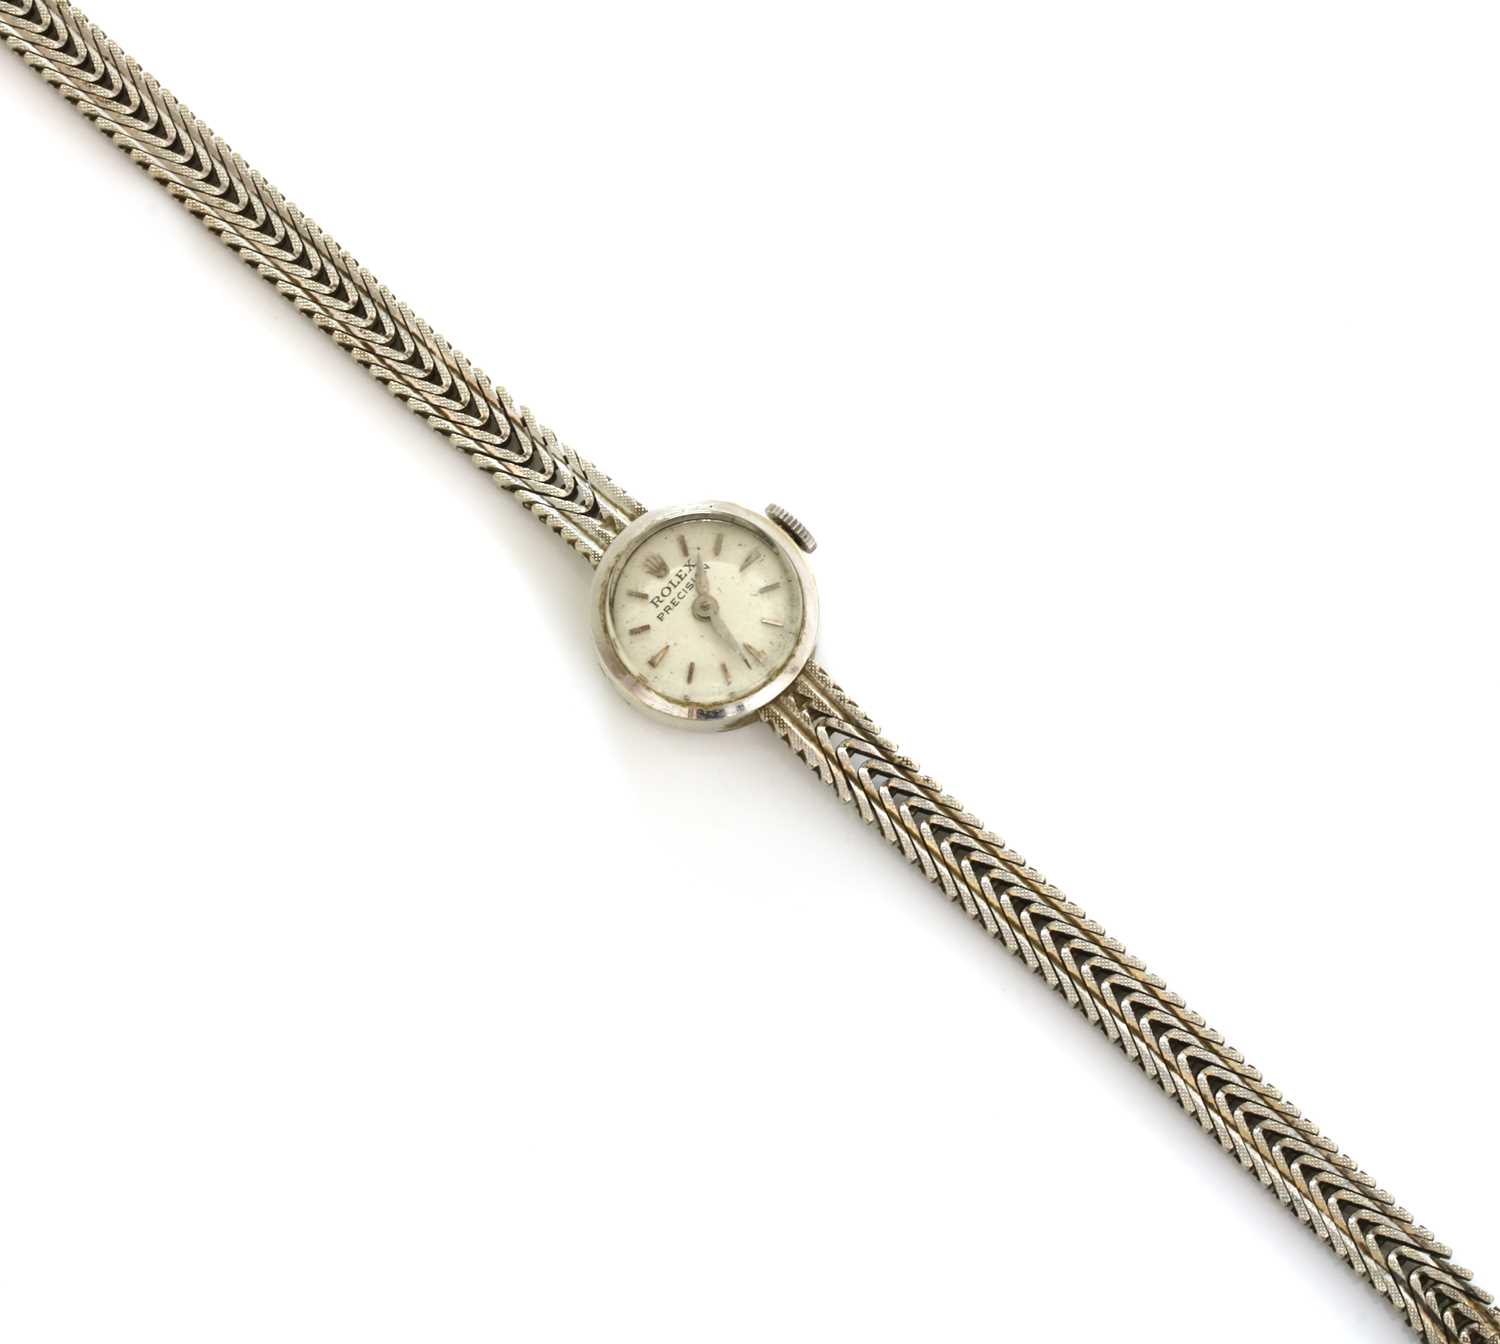 Lot 192 - A ladies' 9ct white gold Rolex 'Precision' mechanical bracelet watch, c.1960